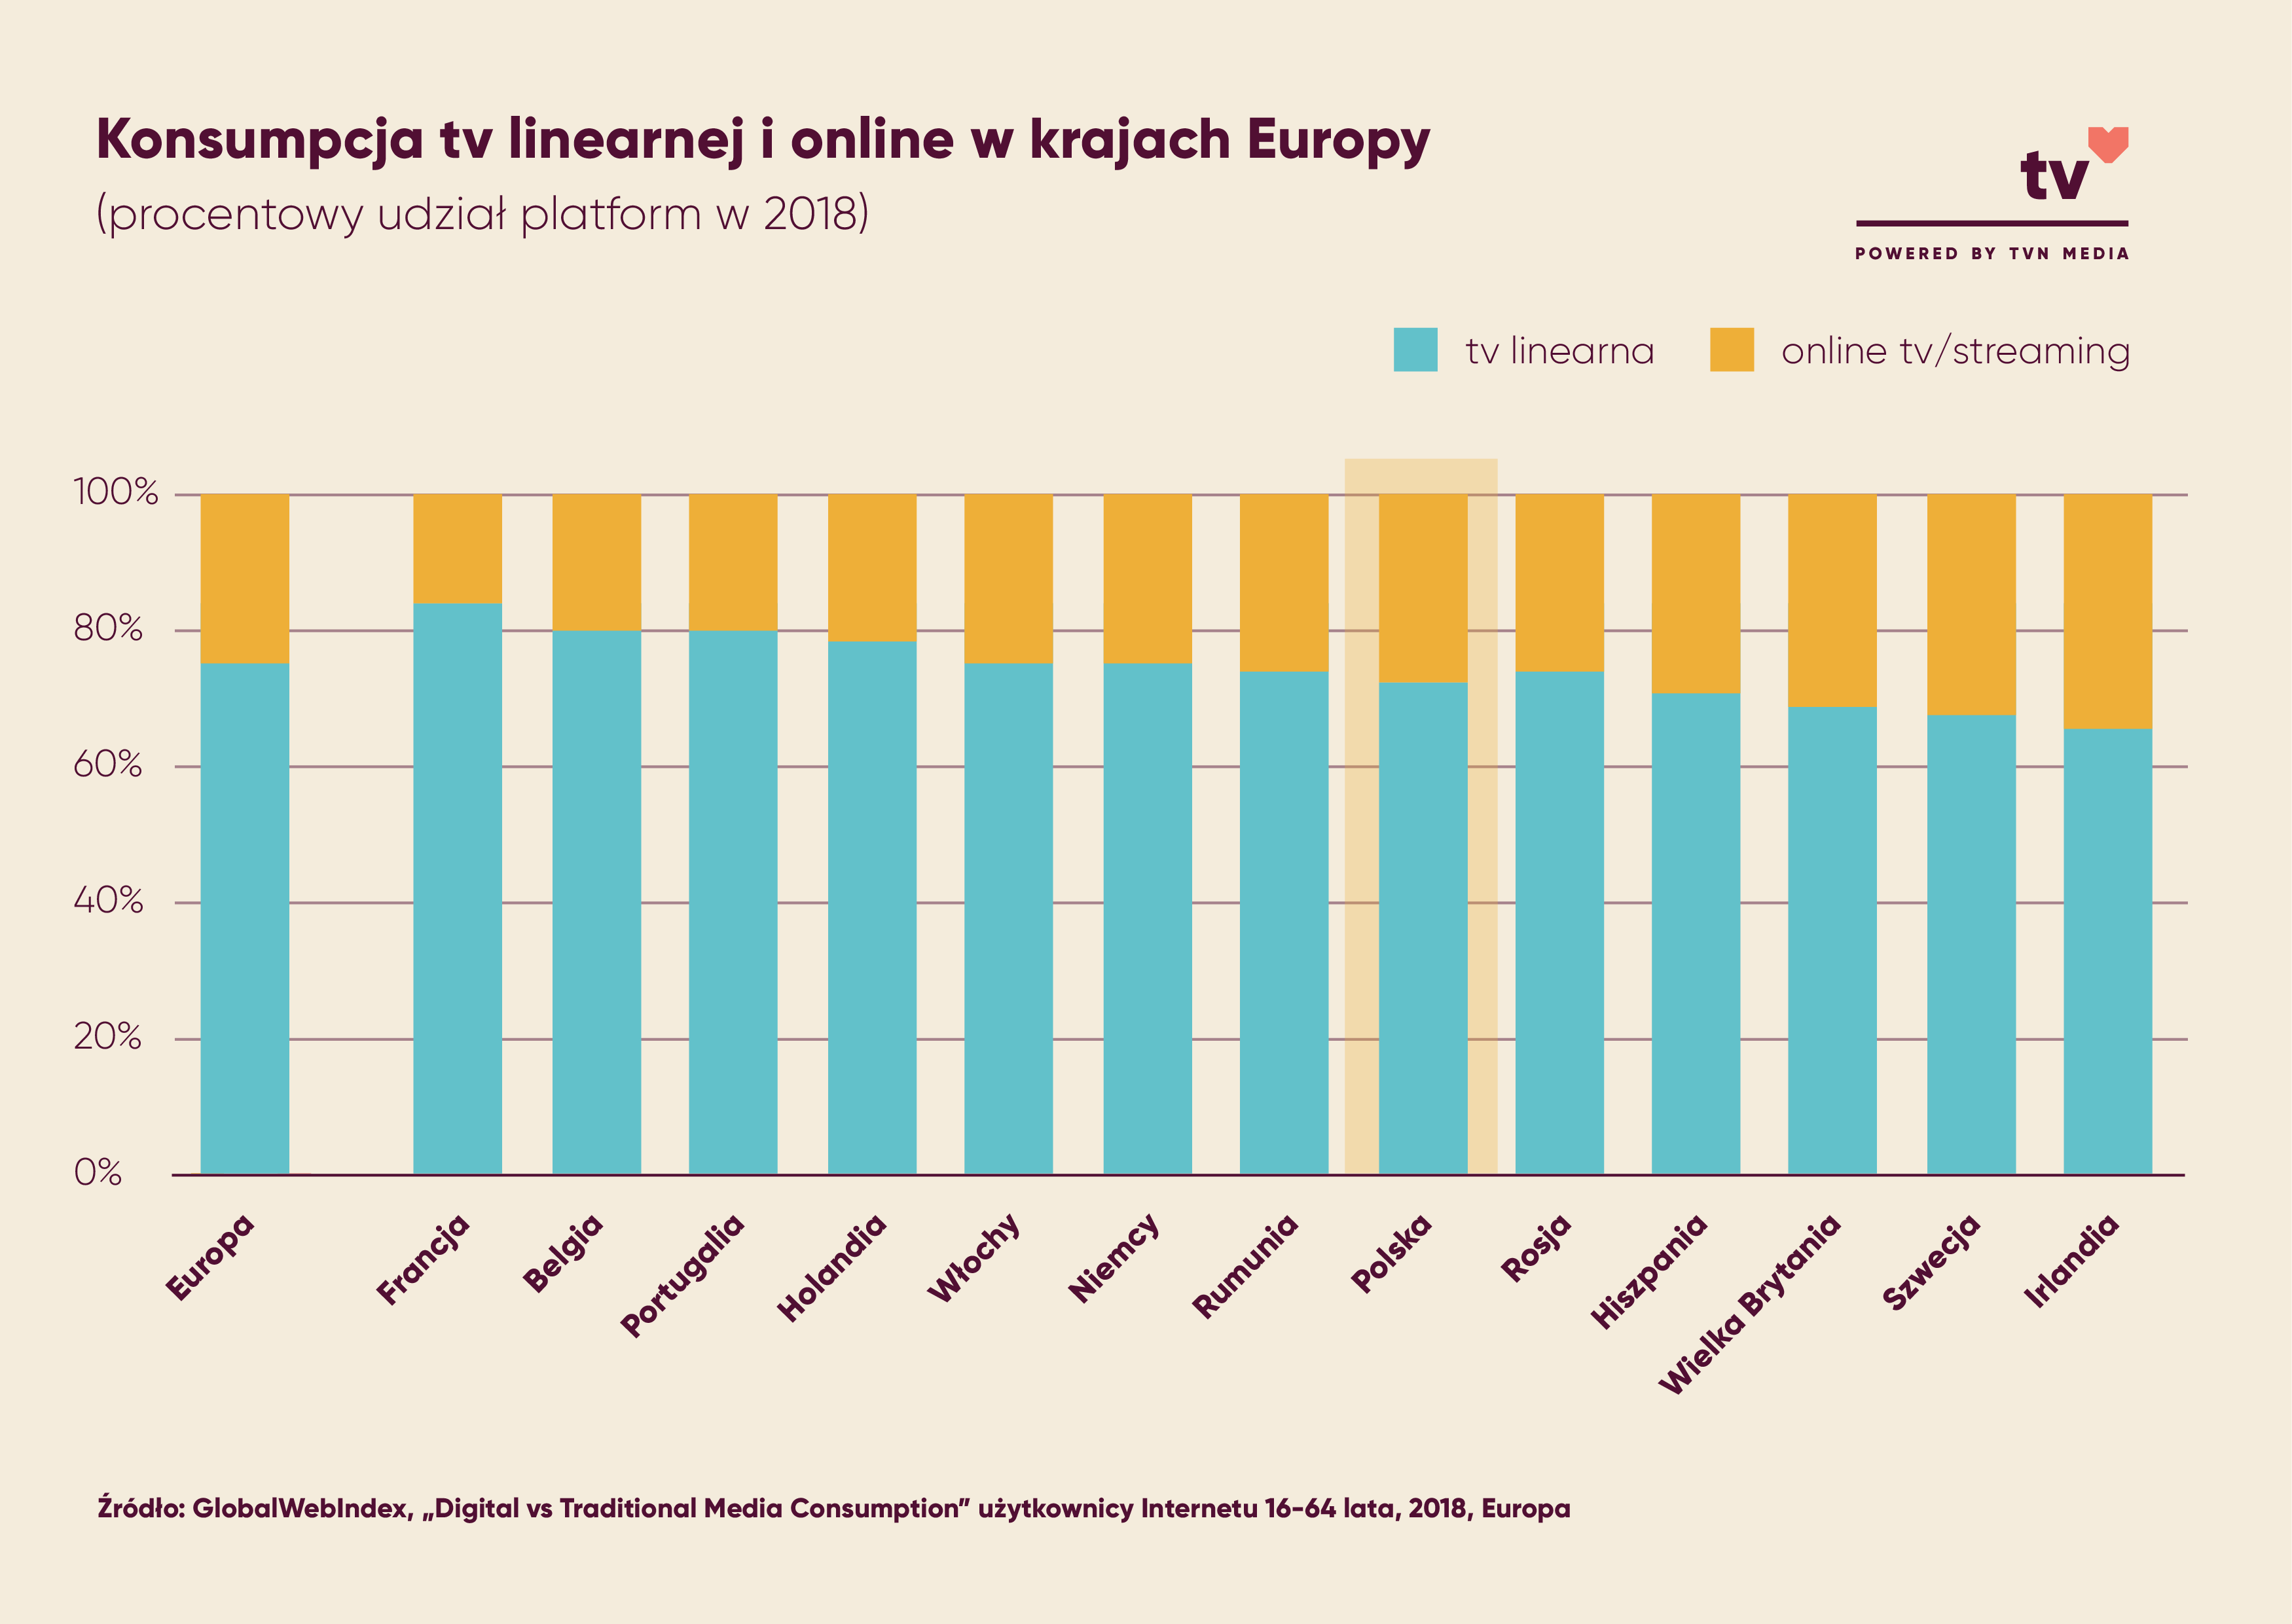 Konsumpcja tv linearnej i online w krajach Europy - udział